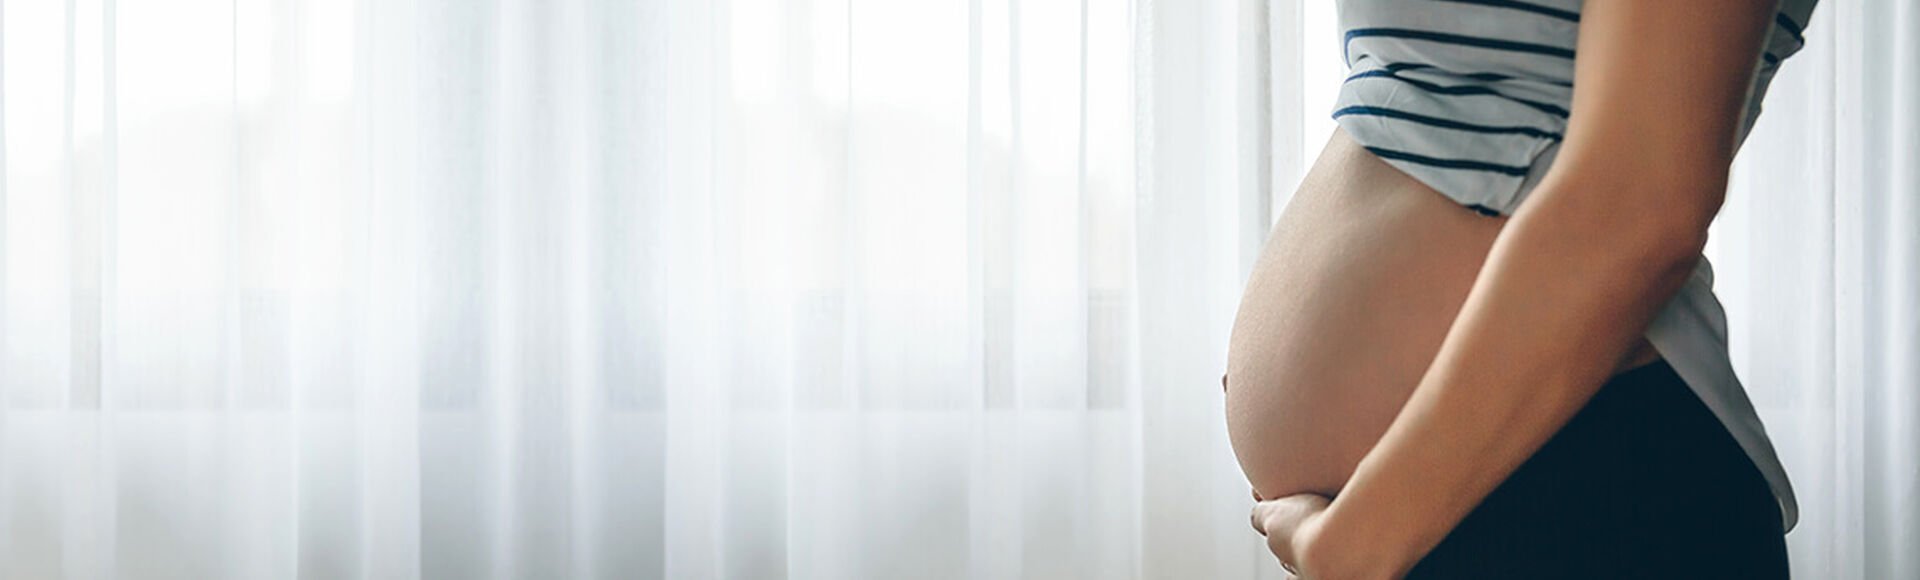 Información de la semana 27 de embarazo | Más Abrazos by Huggies